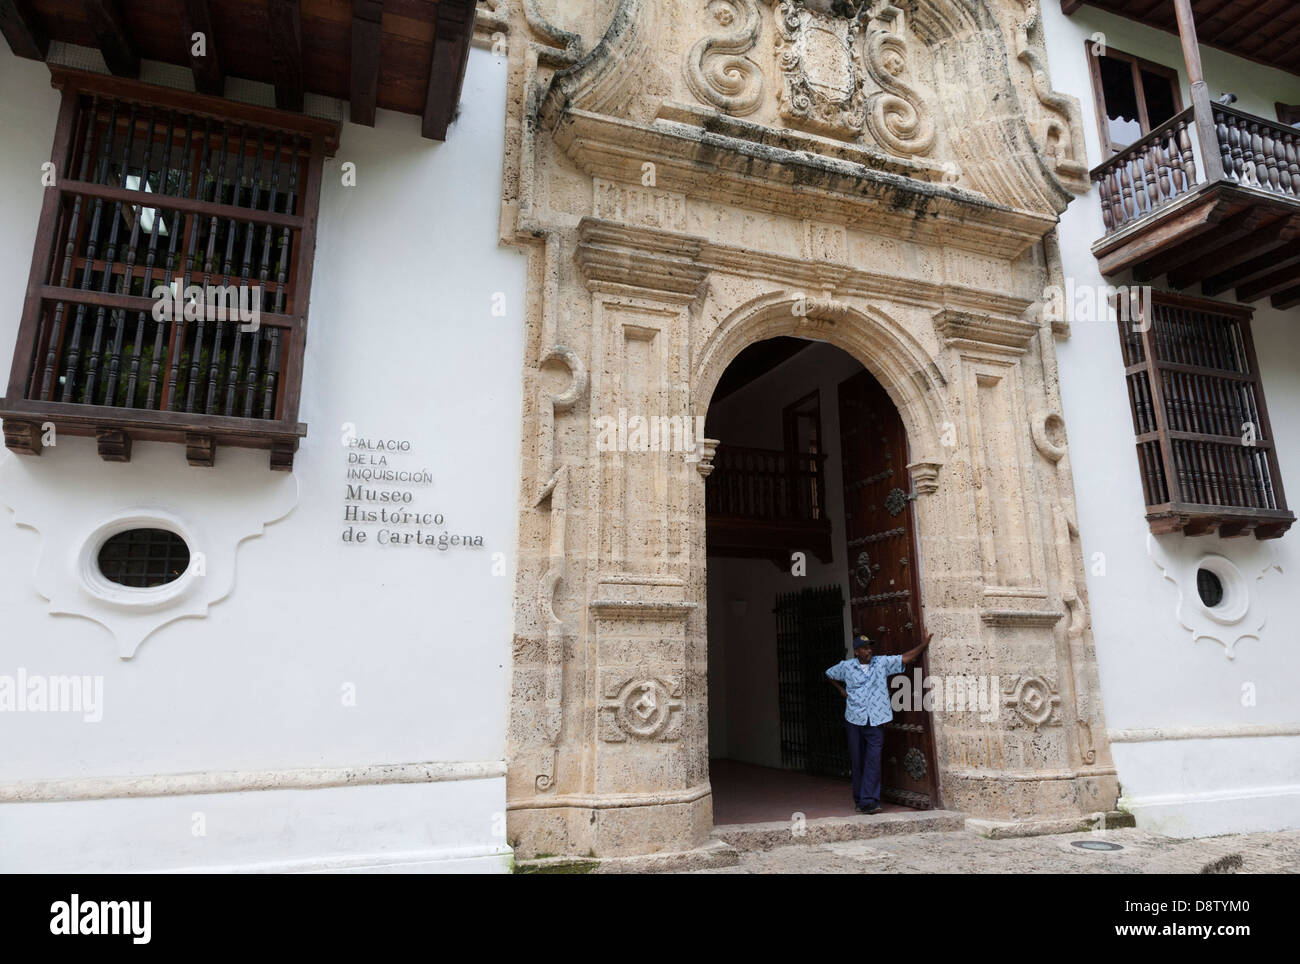 Palacio De La Inquisicion, Museo Historico de Cartagena Plaza de Bolivar, Cartagena, Kolumbien Stockfoto